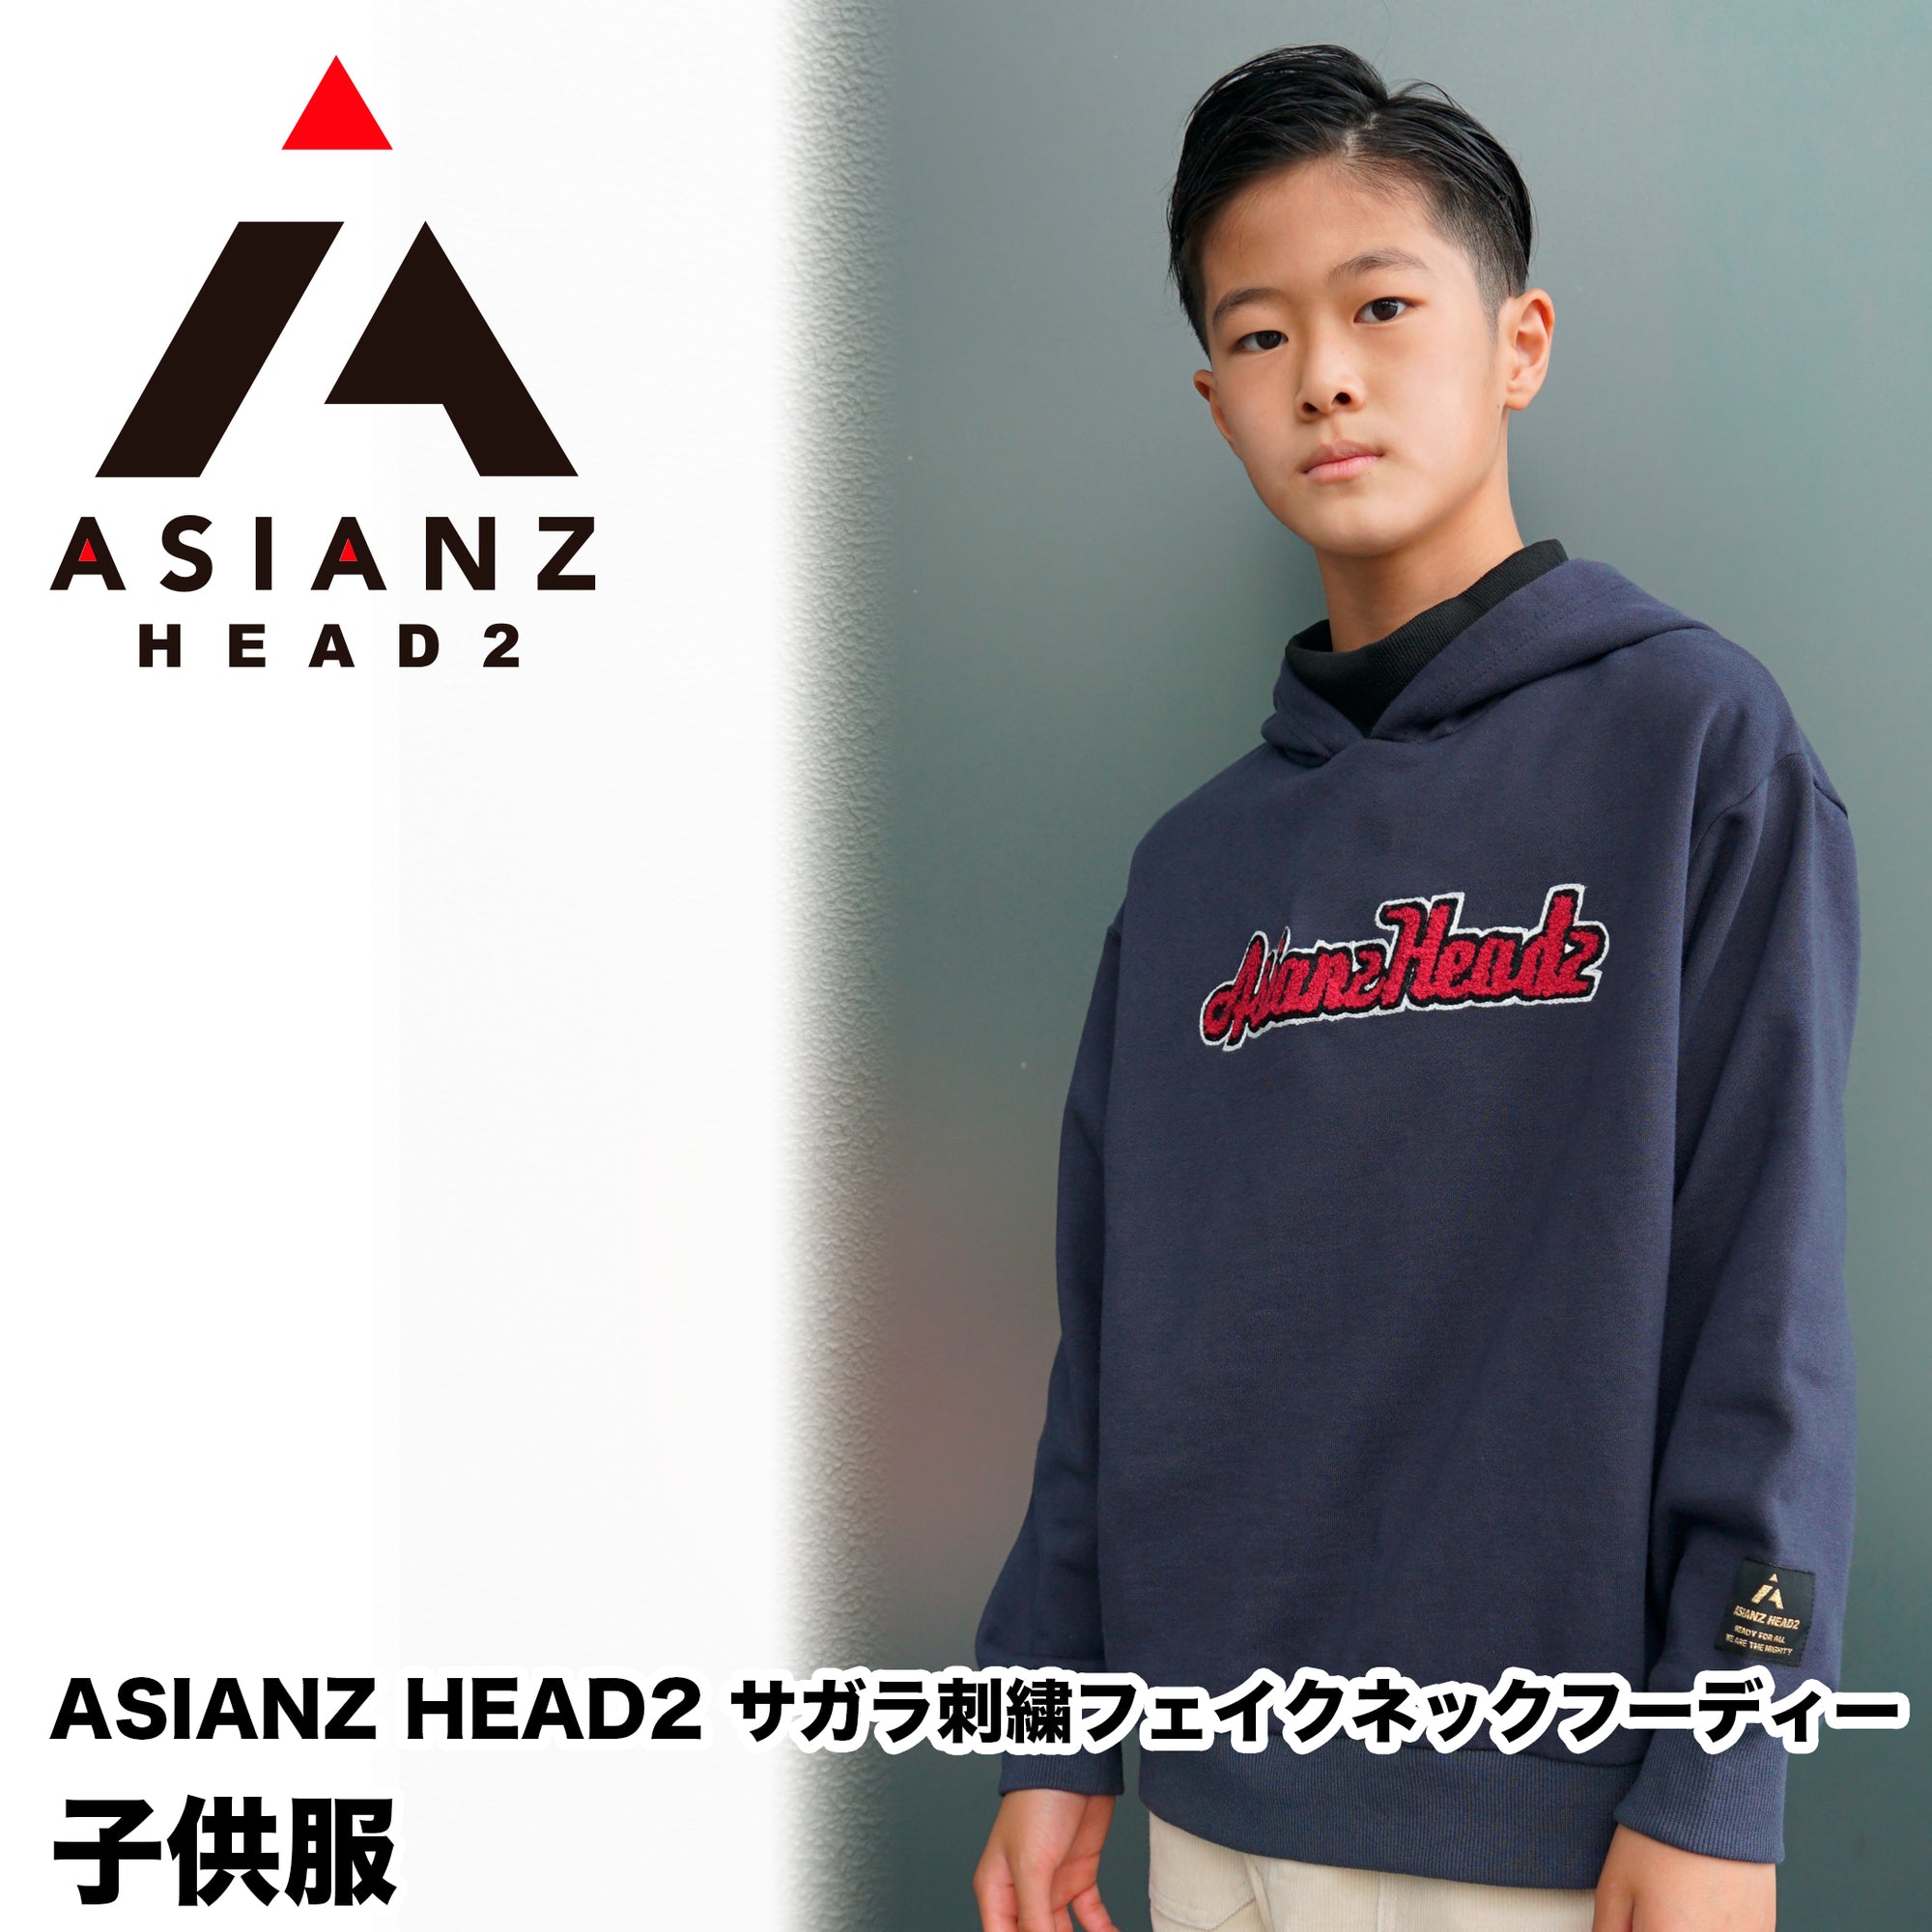 (40%オフ! セール商品)ASIANZ HEAD2 サガラ刺繍フェイクネックフーディー キッズウェアー